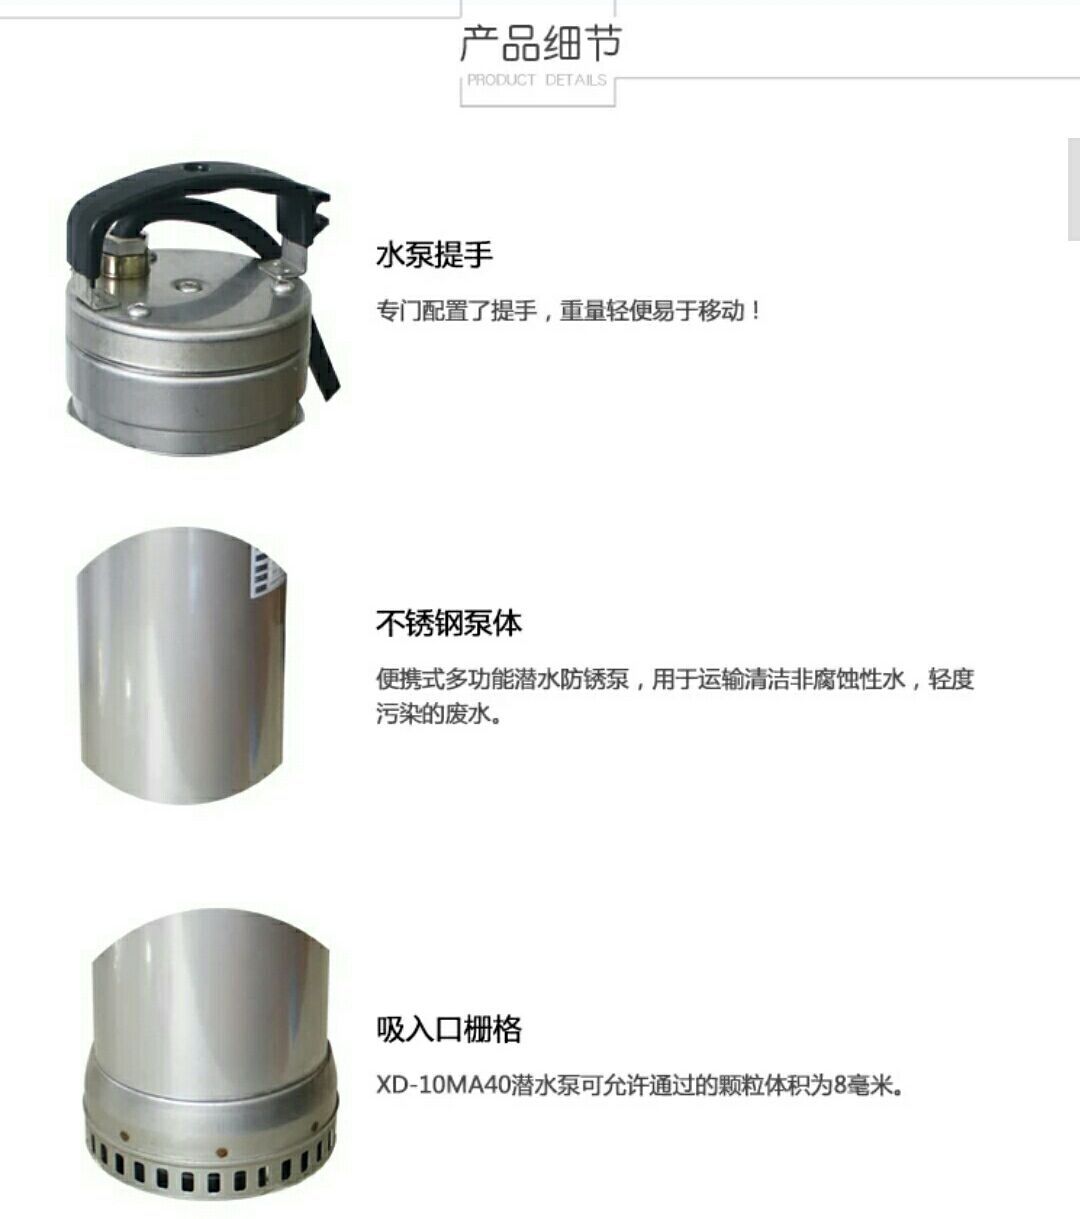 台湾鲨霸SA不锈钢潜水泵XV-20T50雨水排污泵地下室污水提升示例图3